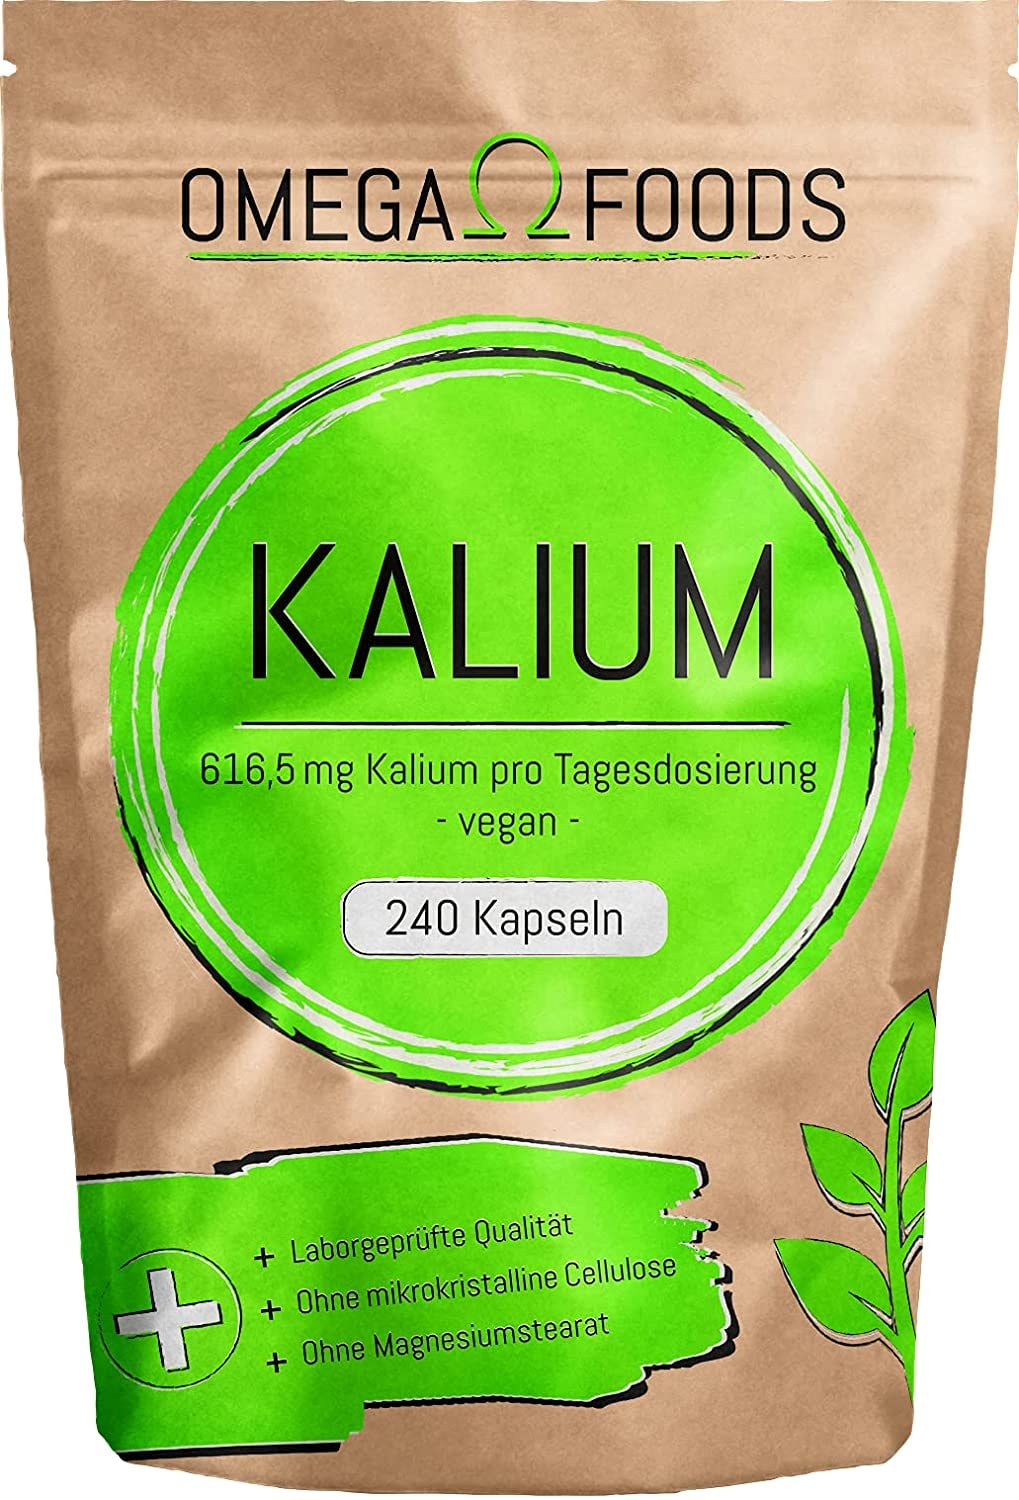 OMEGA FOODS - Kalium Hochdosiert - 240 Kalium Kapseln - Vegan - 616,5mg Kalium pro Tagesdosierung - Potassium Citrate - Frei von Zusatzstoffen